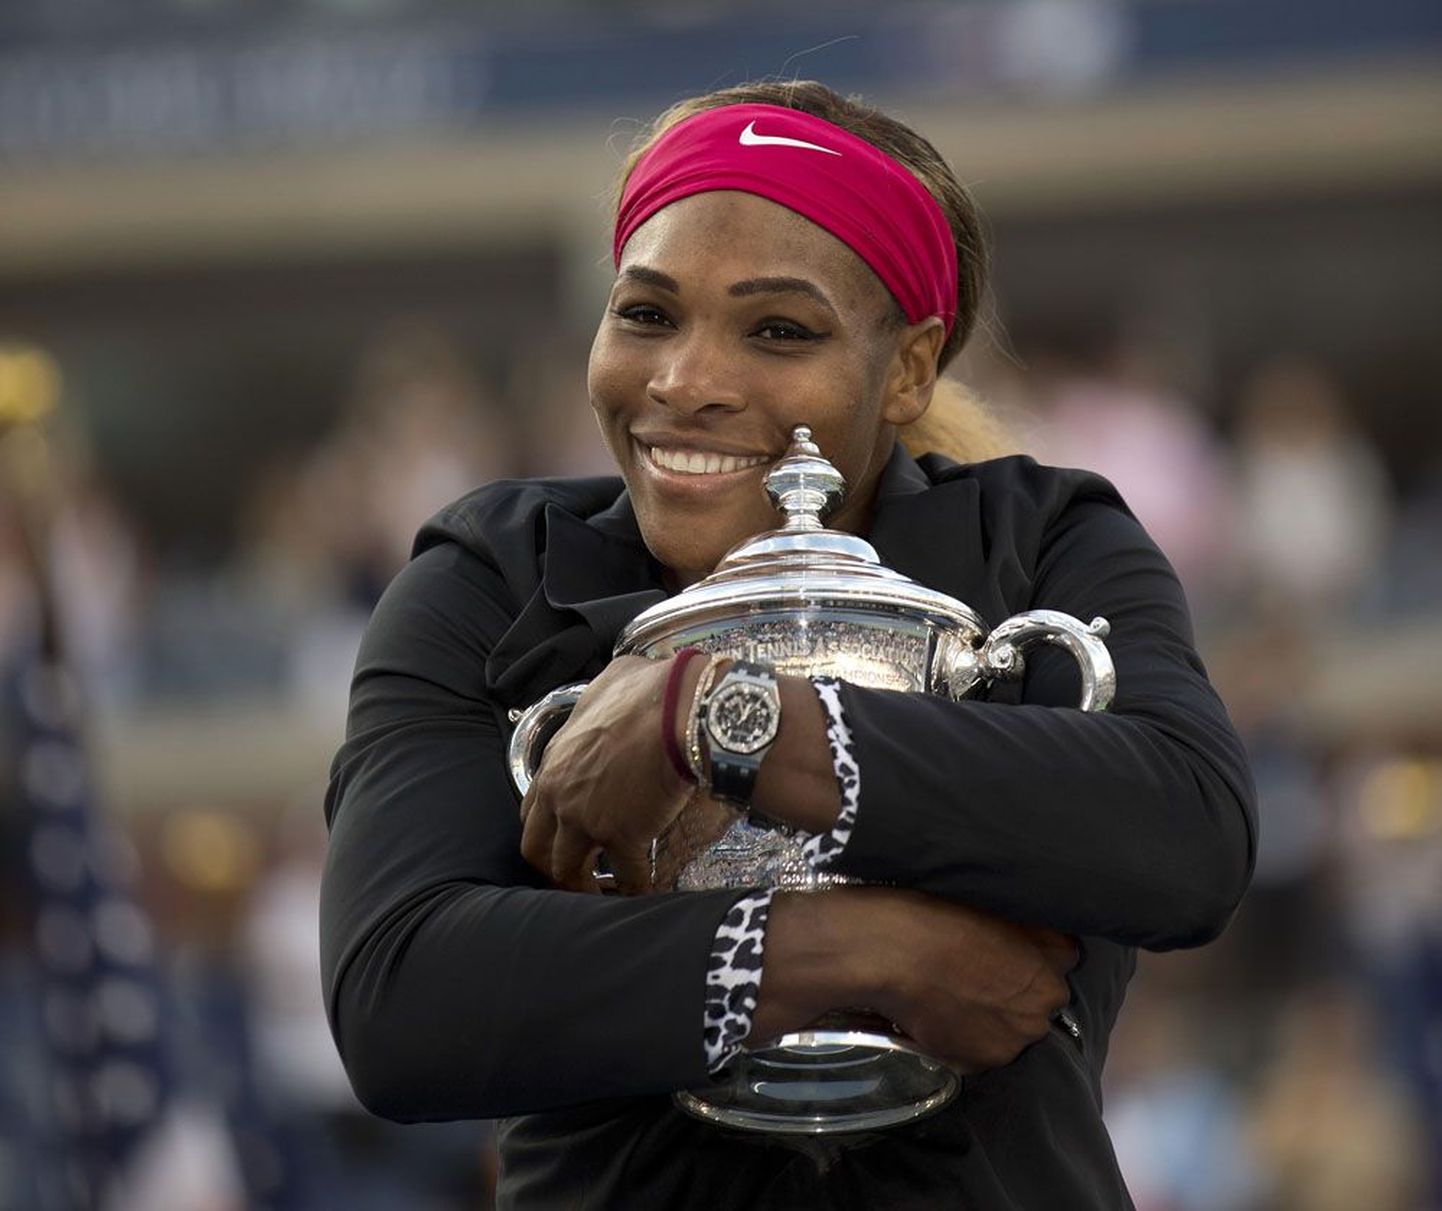 Kolmandat aastat järjest US Openi võitnud Serena Williams pani raskele aastale ilusa punkti.